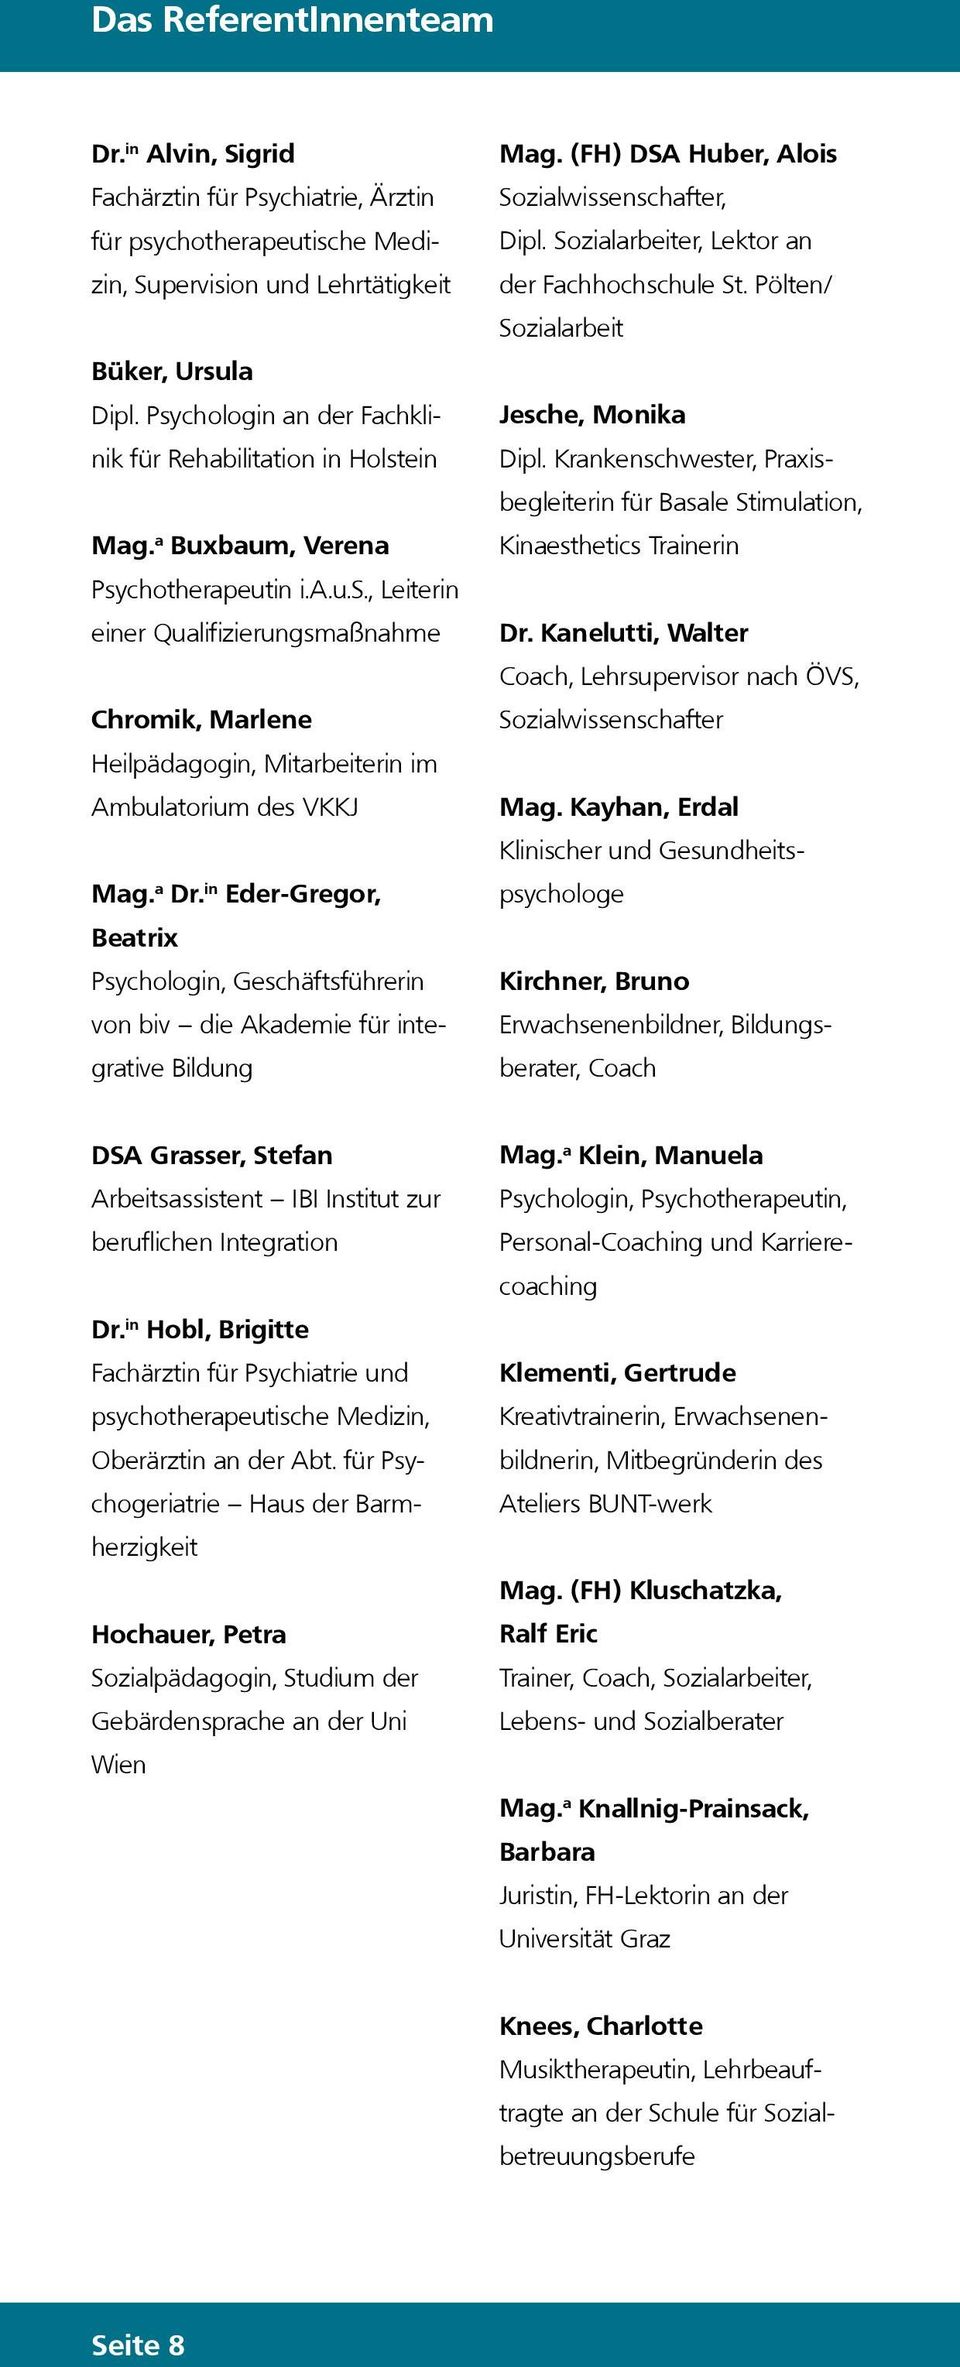 a Dr. in Eder-Gregor, Beatrix Psychoogin, Geschäftsführerin von biv die Akademie für integrative Bidung Mag. (FH) DSA Huber, Aois Soziawissenschafter, Dip.